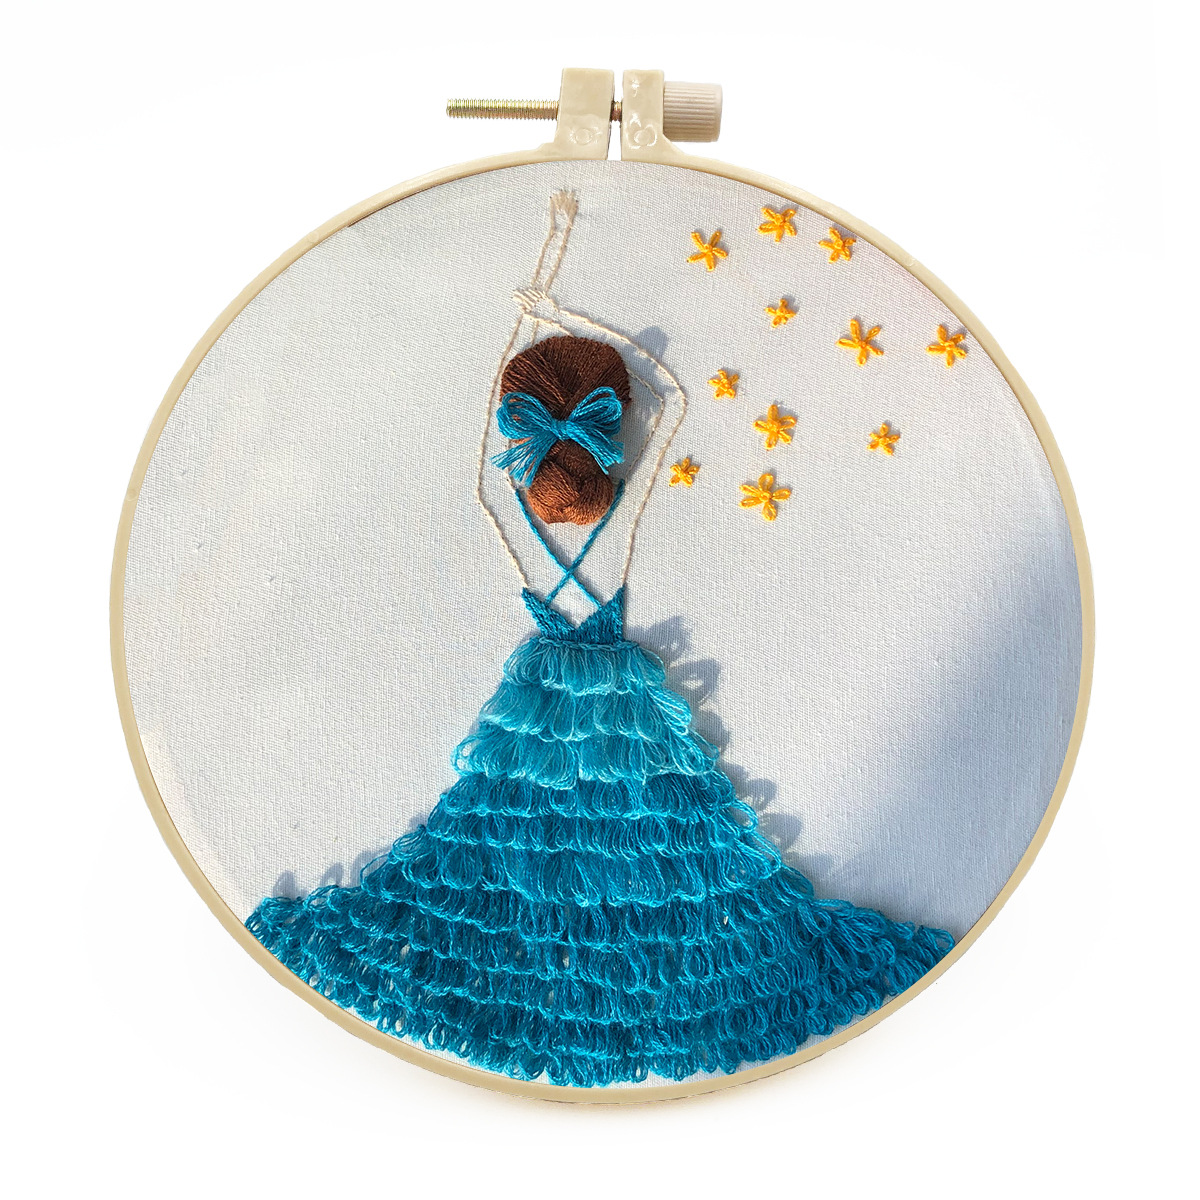 Embroidery Starter Kit Cross stitch kit for Adult Beginner -Girl pattern